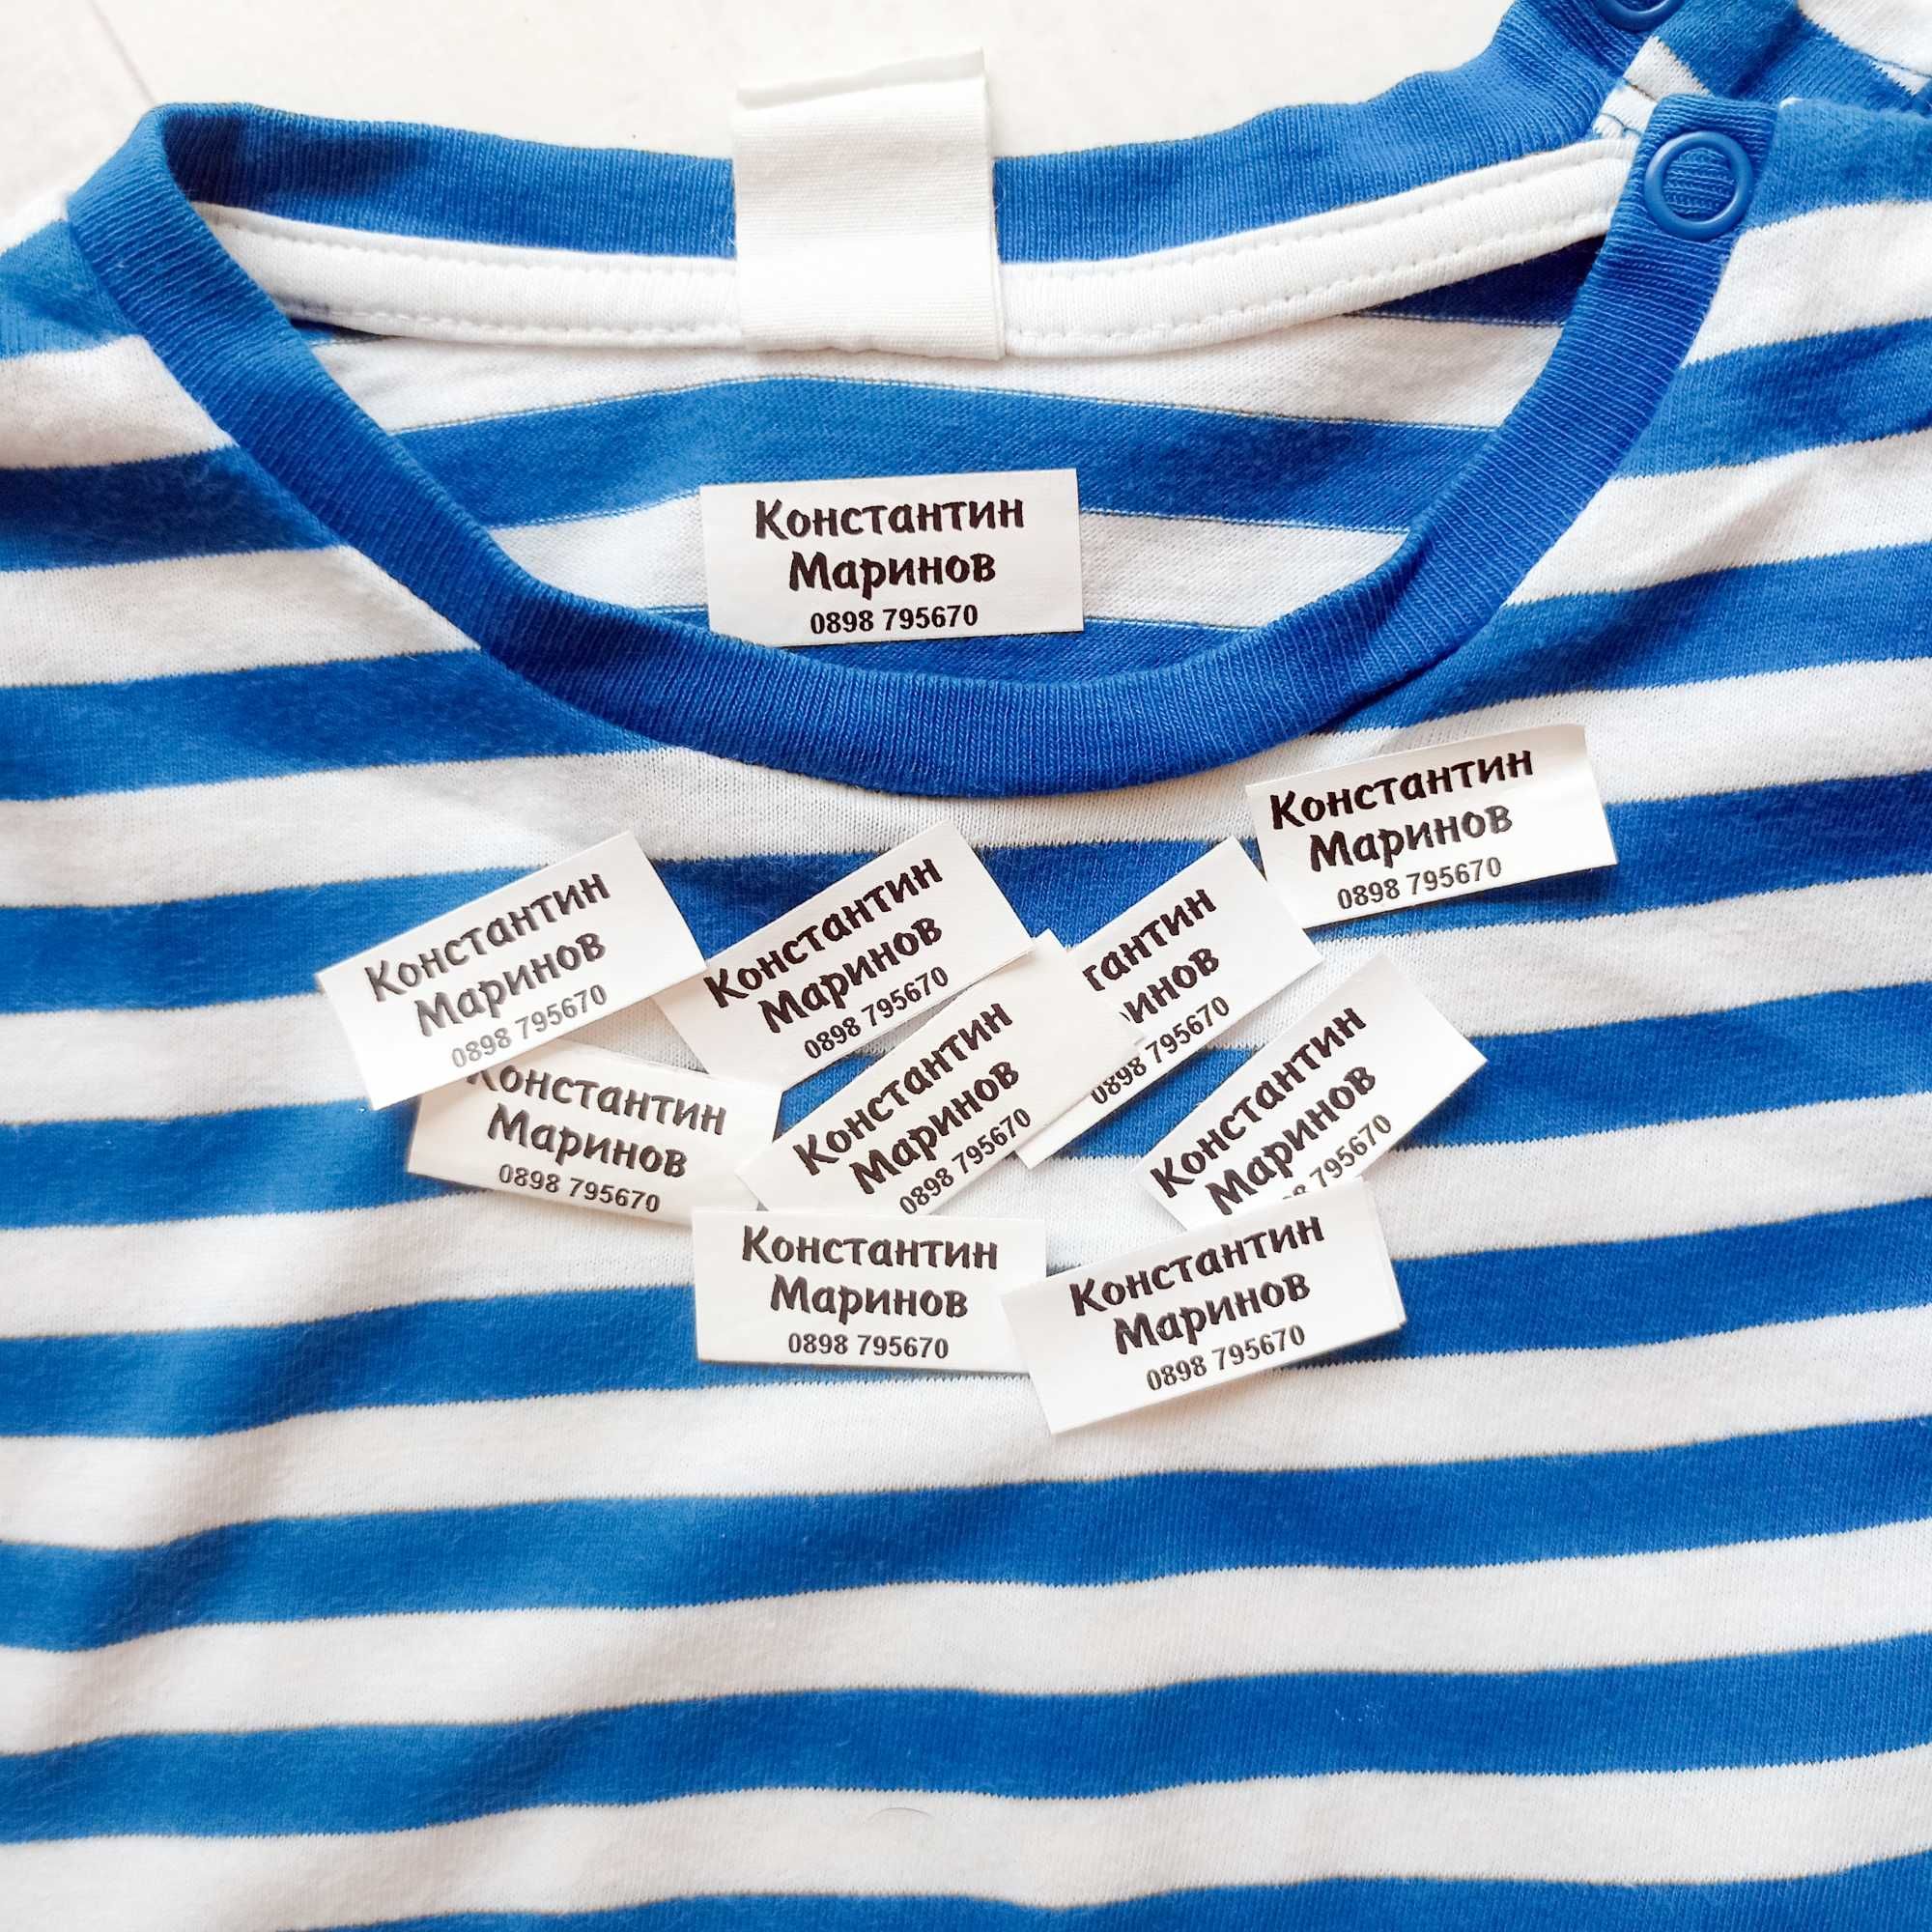 Етикети за дрехи за детска градина и ясла